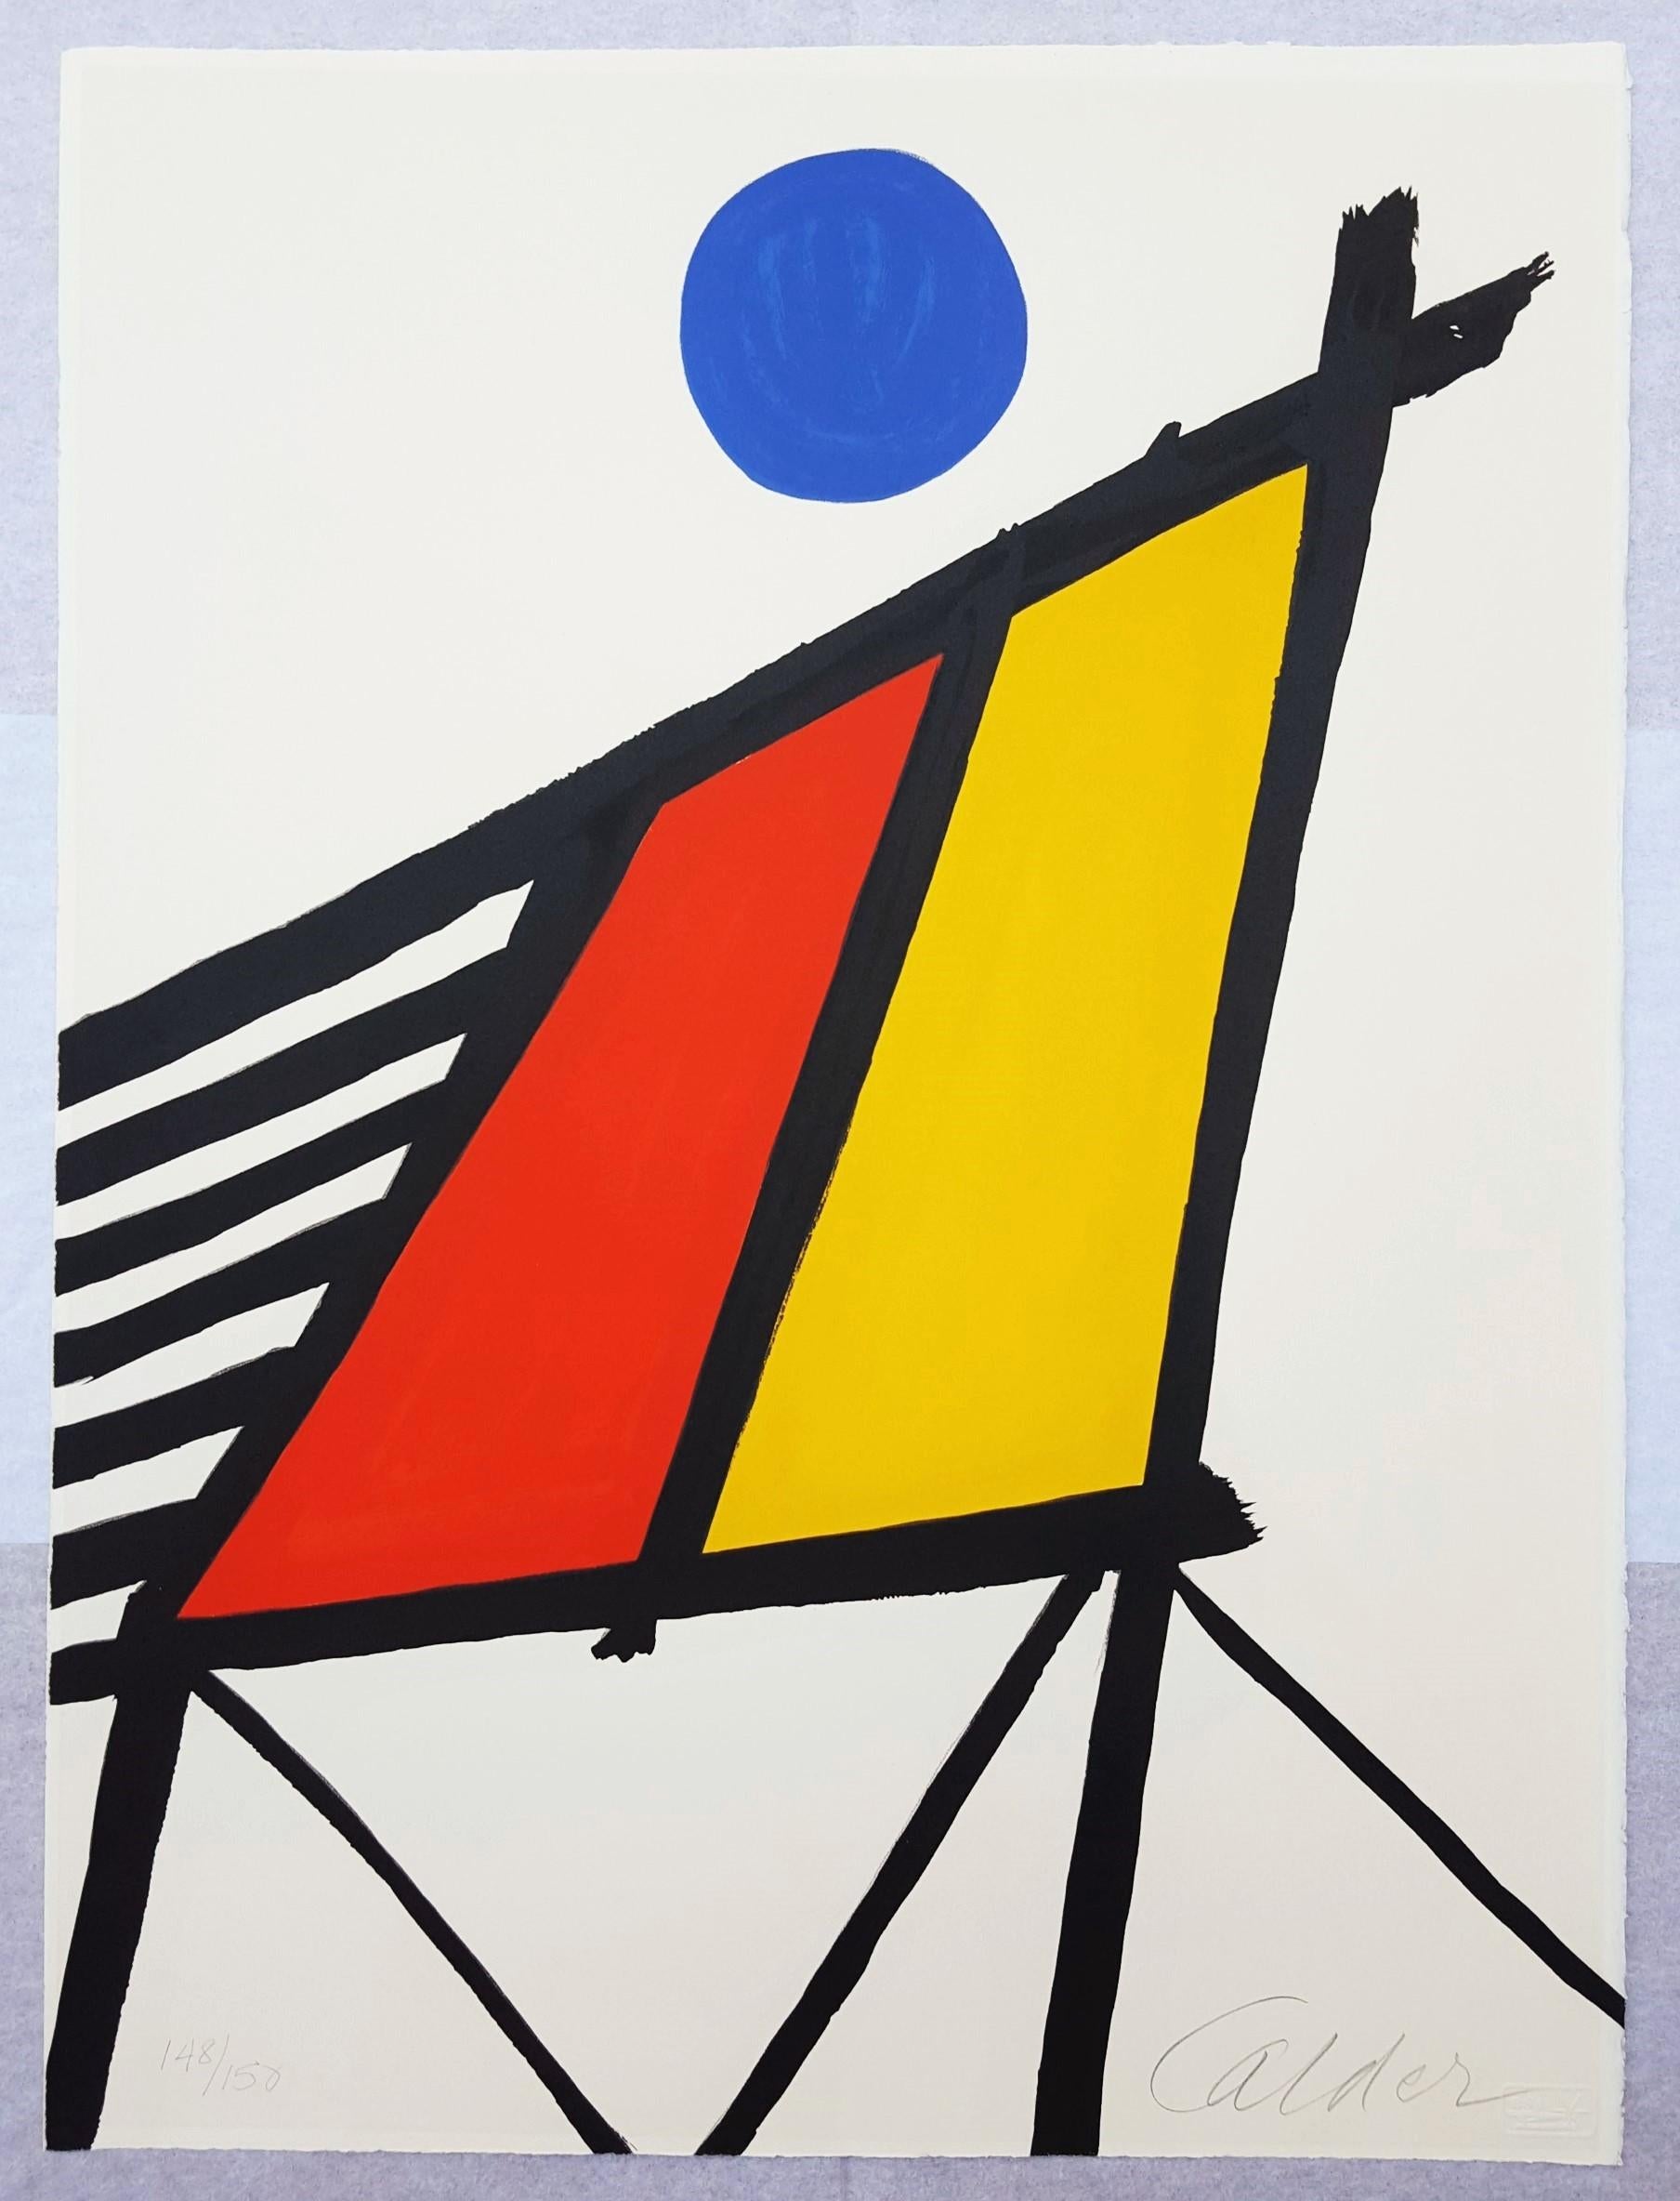 Blue Sun - Print by Alexander Calder